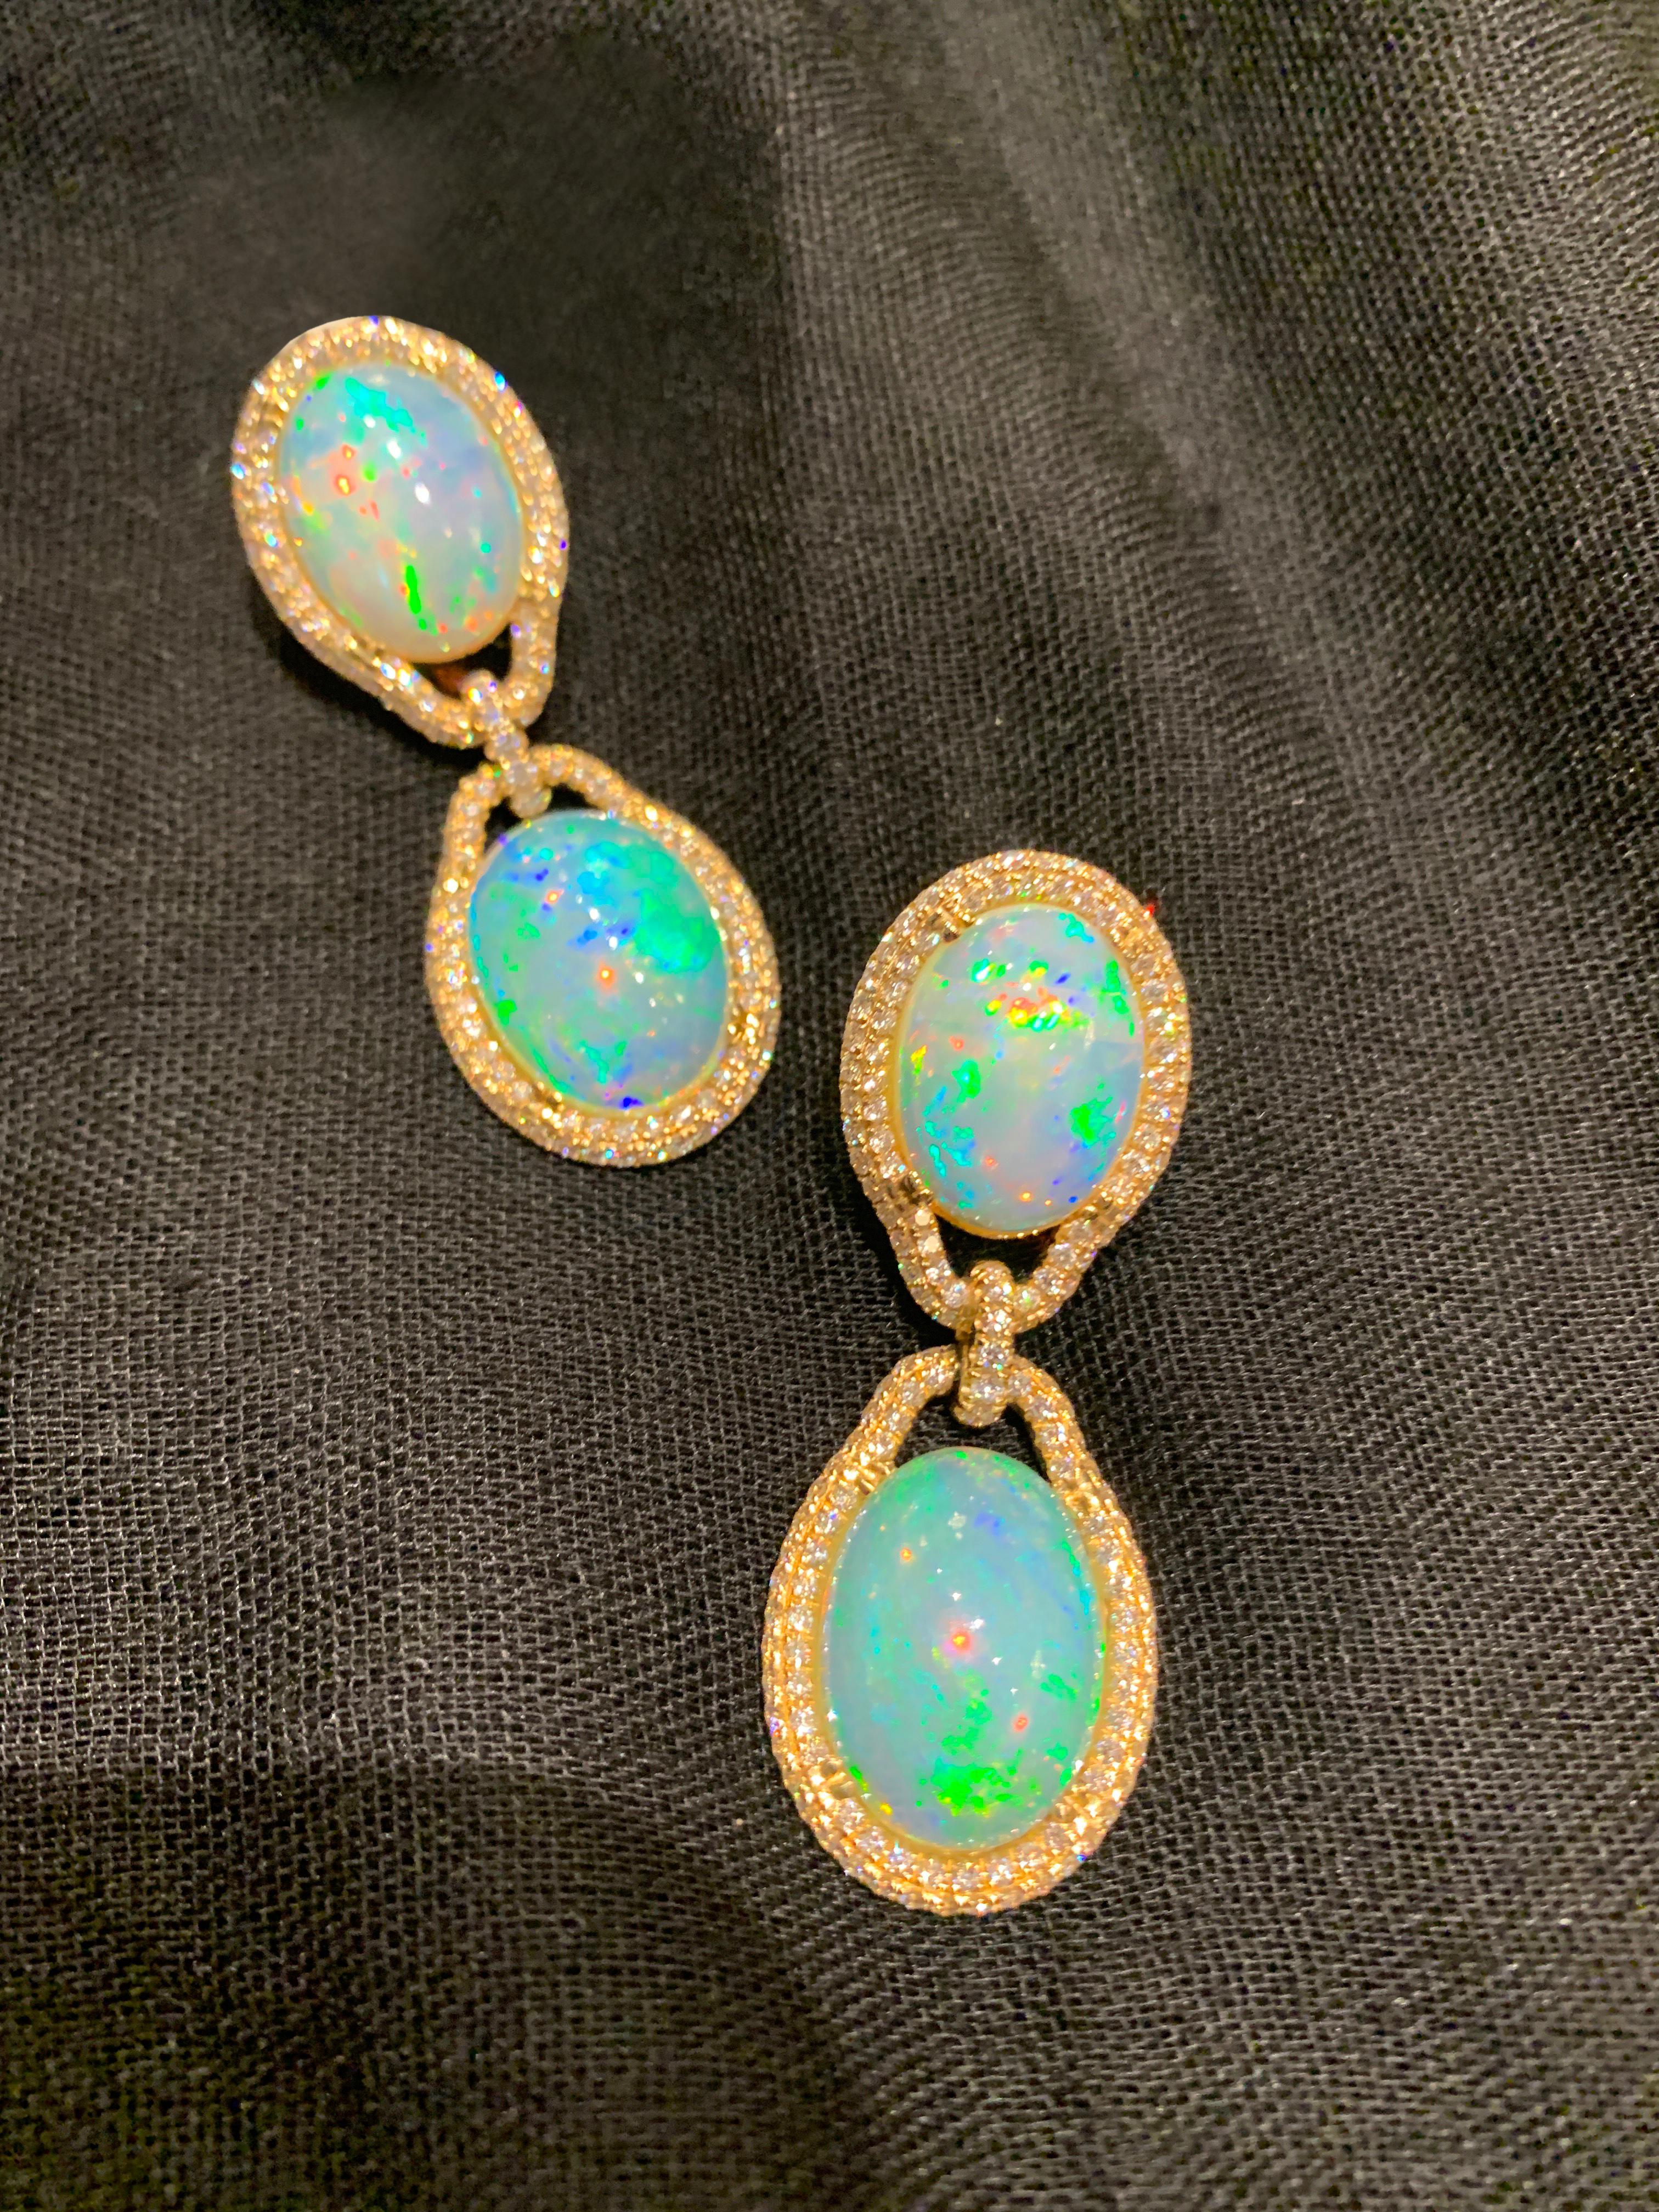 birks opal earrings